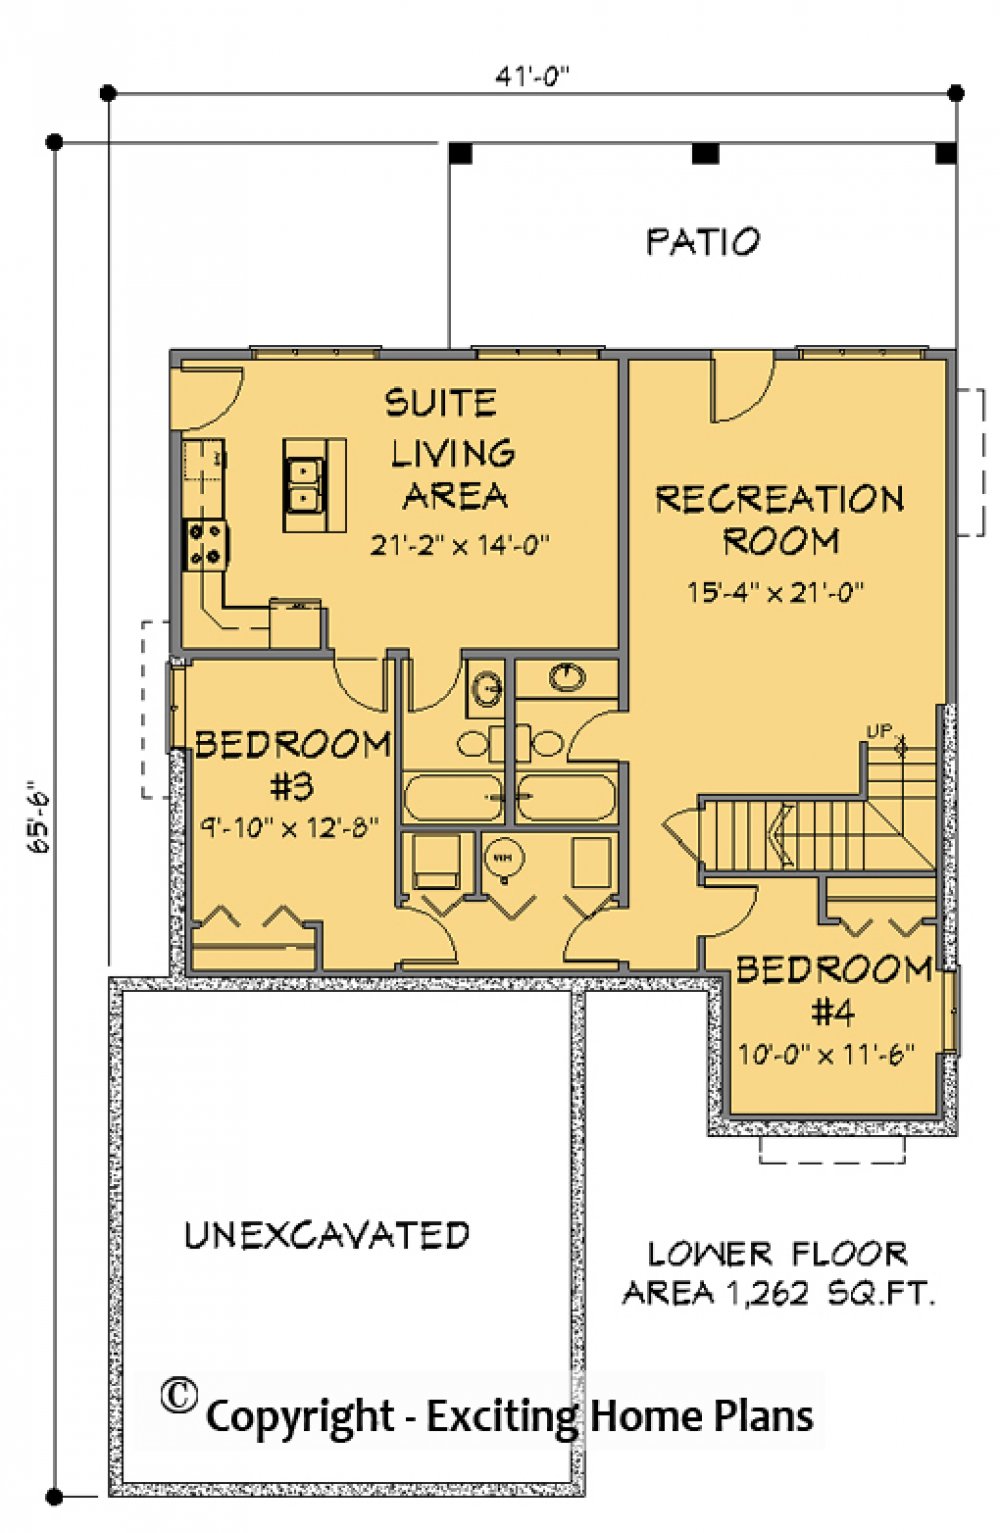 House Plan E1168-10 Lower Floor Plan